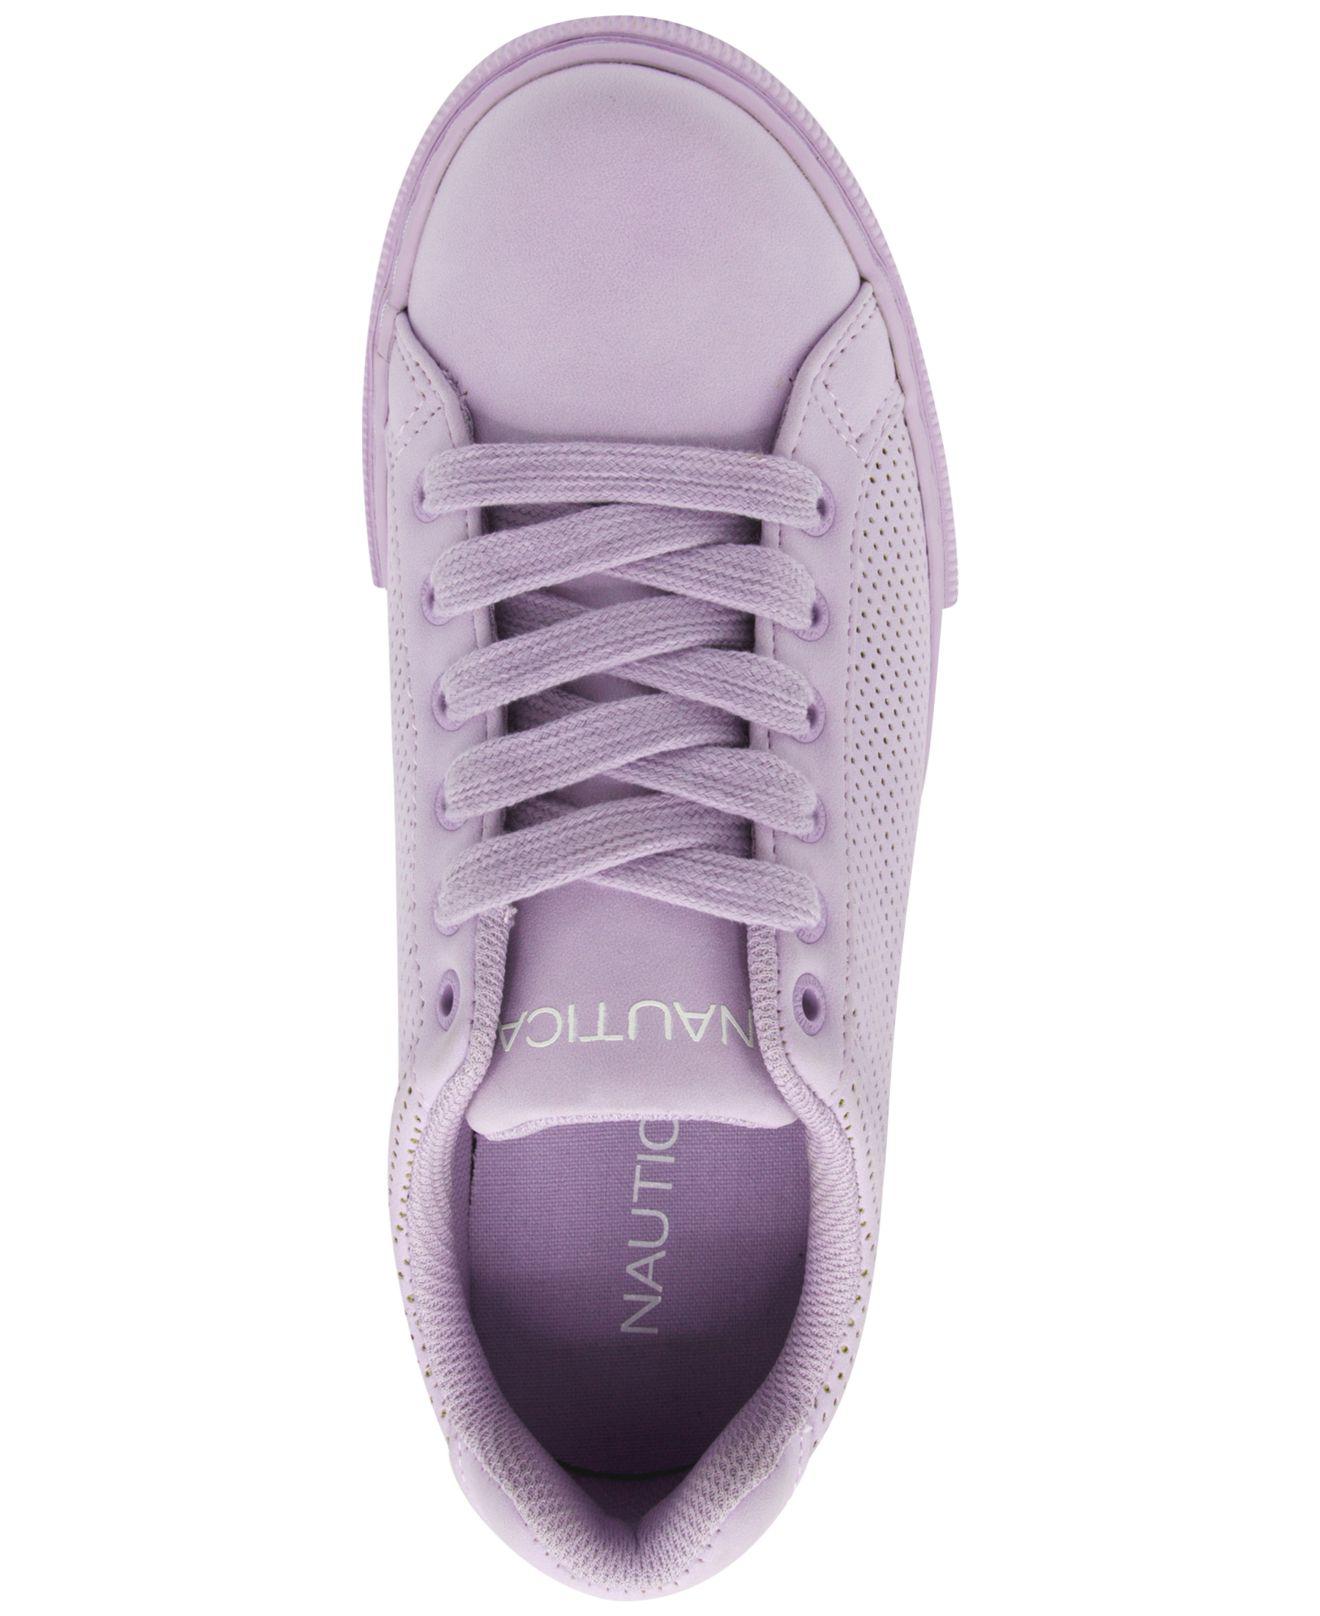 nautica Pale Lavender Steam Sneakers